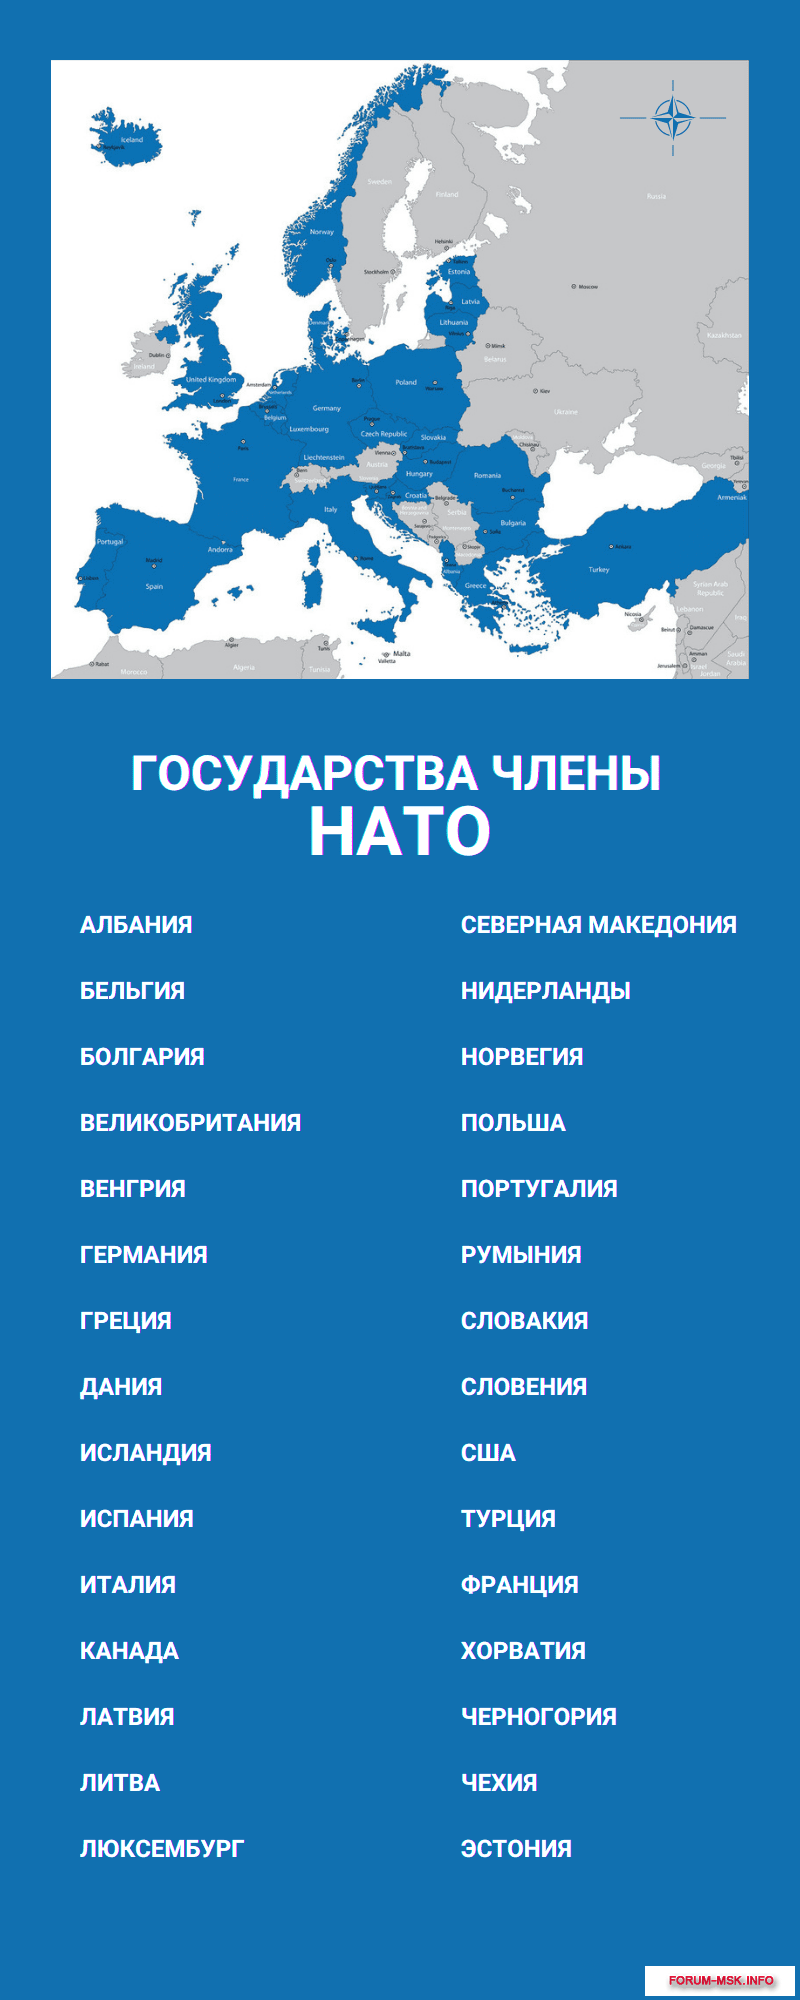 Список государств — членов НАТО. Список стран - членов НАТО. Сколько стран в НАТО. Страны нато названия